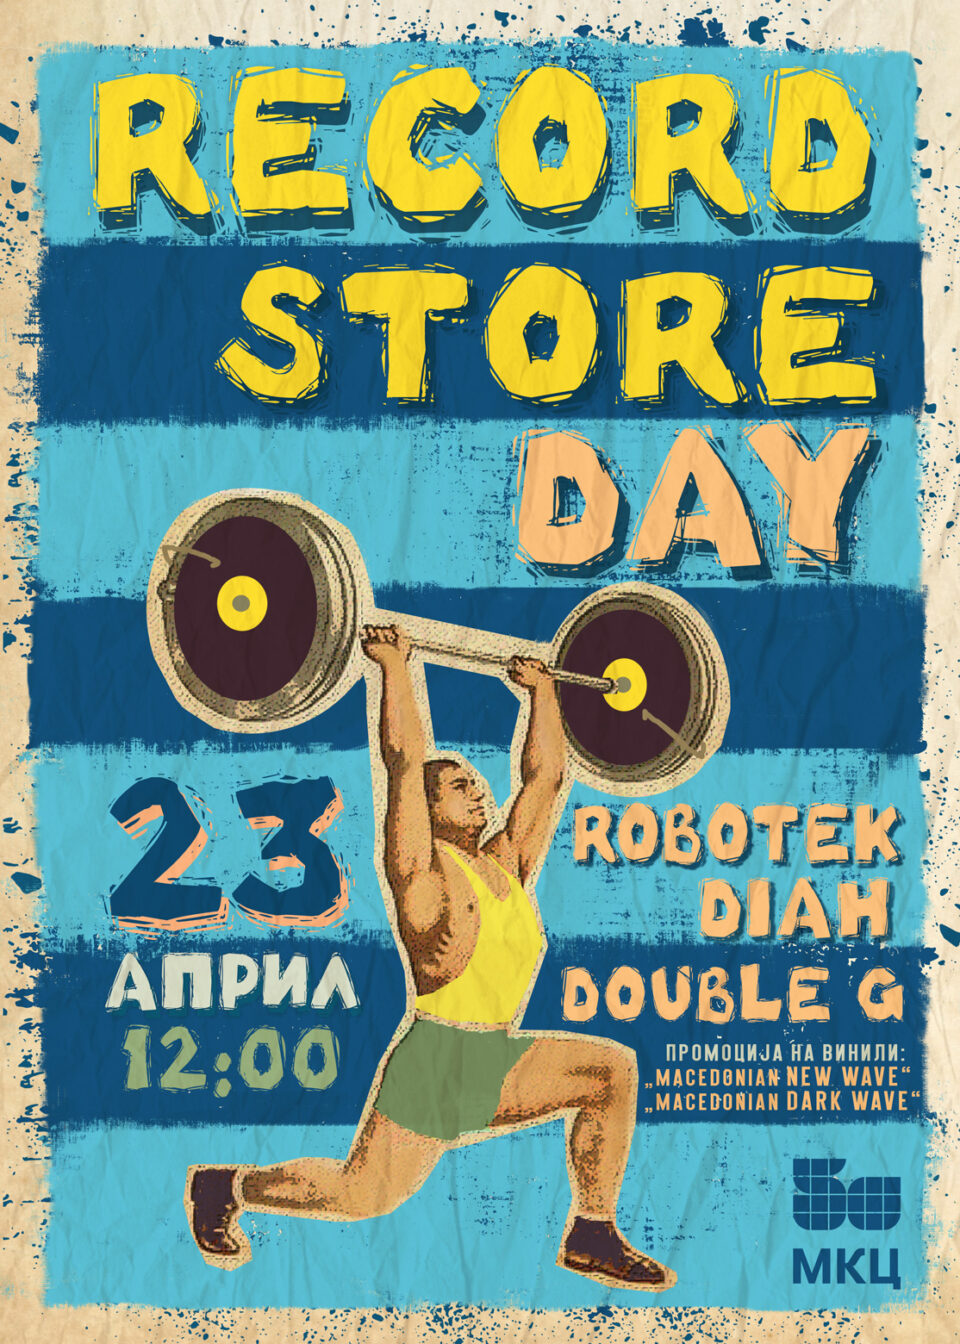 Утре во МКЦ ќе се одржи Record Store Day